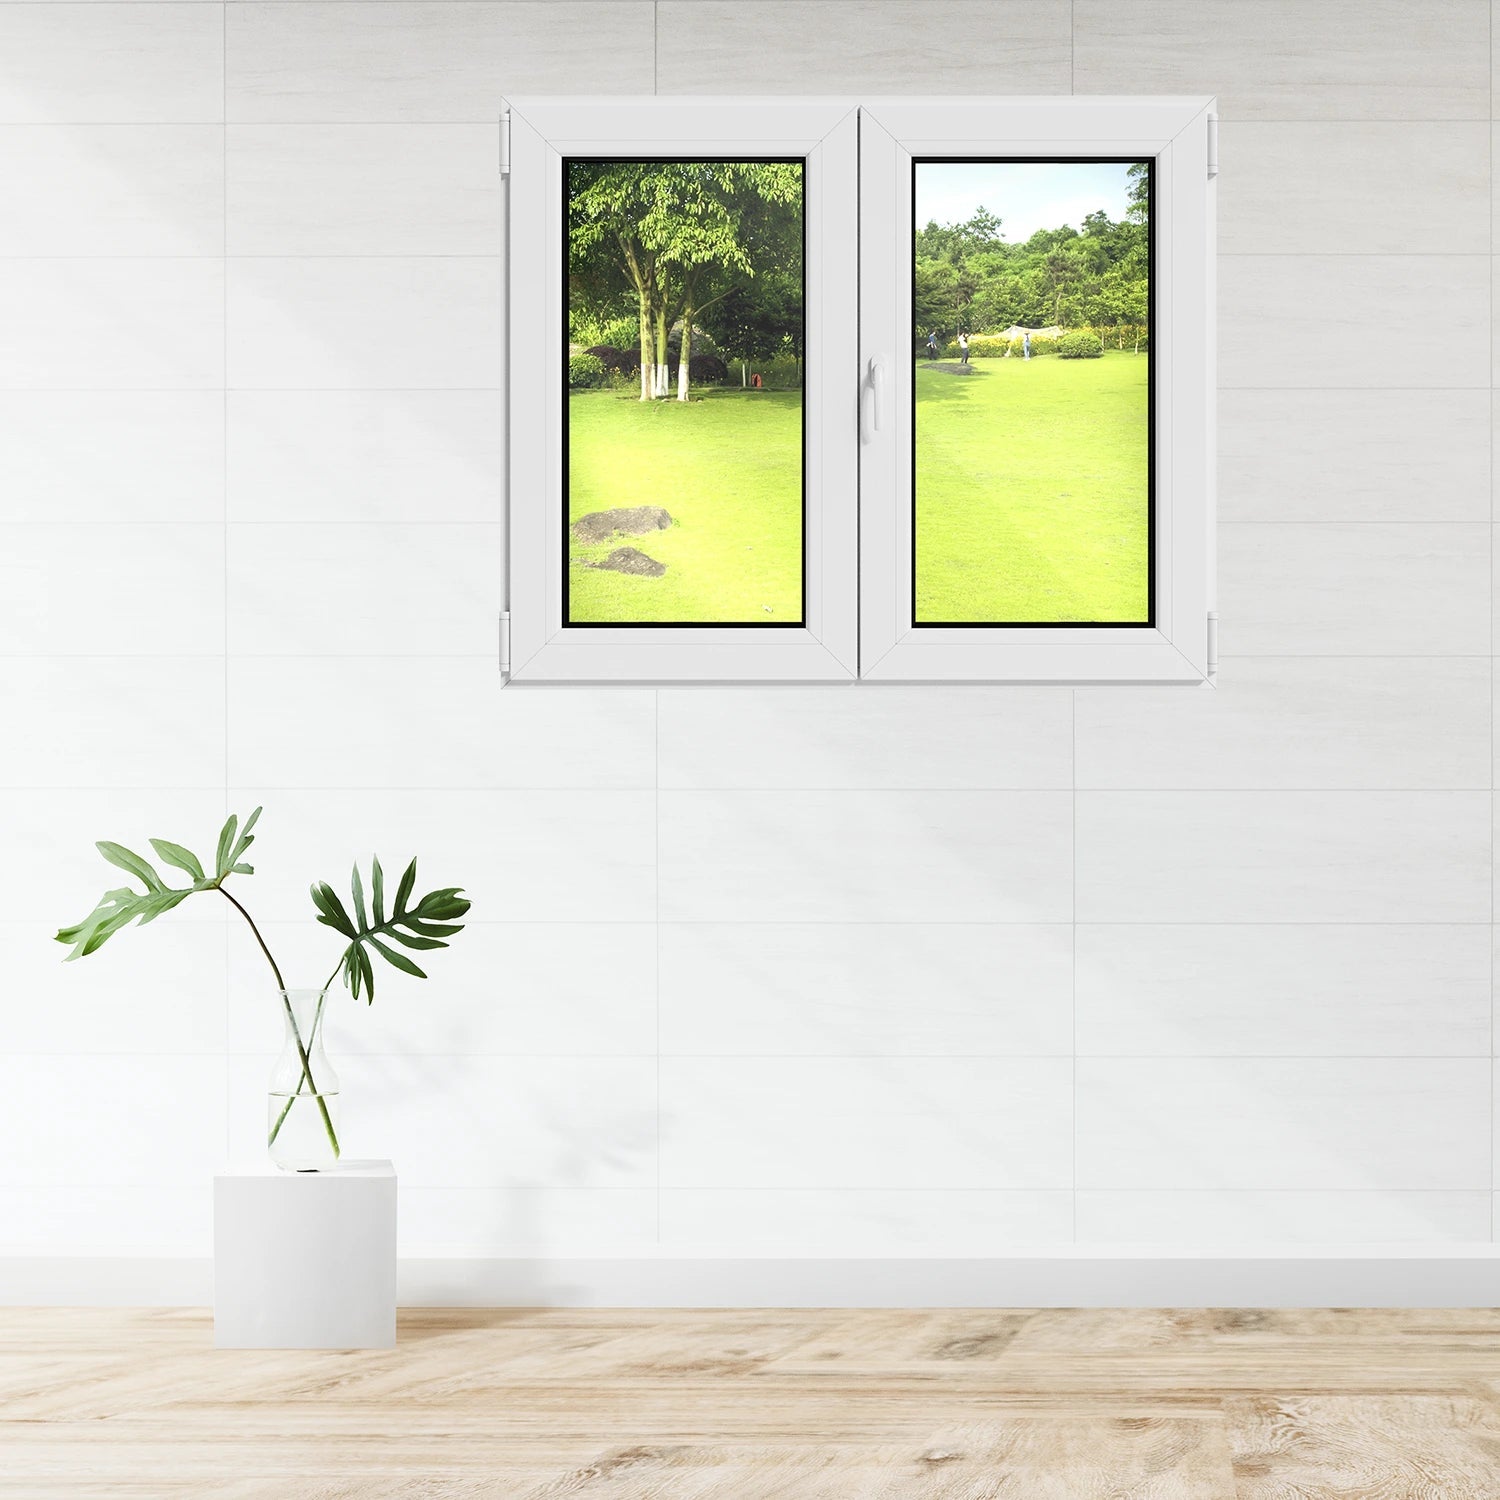 Fenêtre 2 vantaux oscillo-battant PVC blanc H.128 x L.103 cm